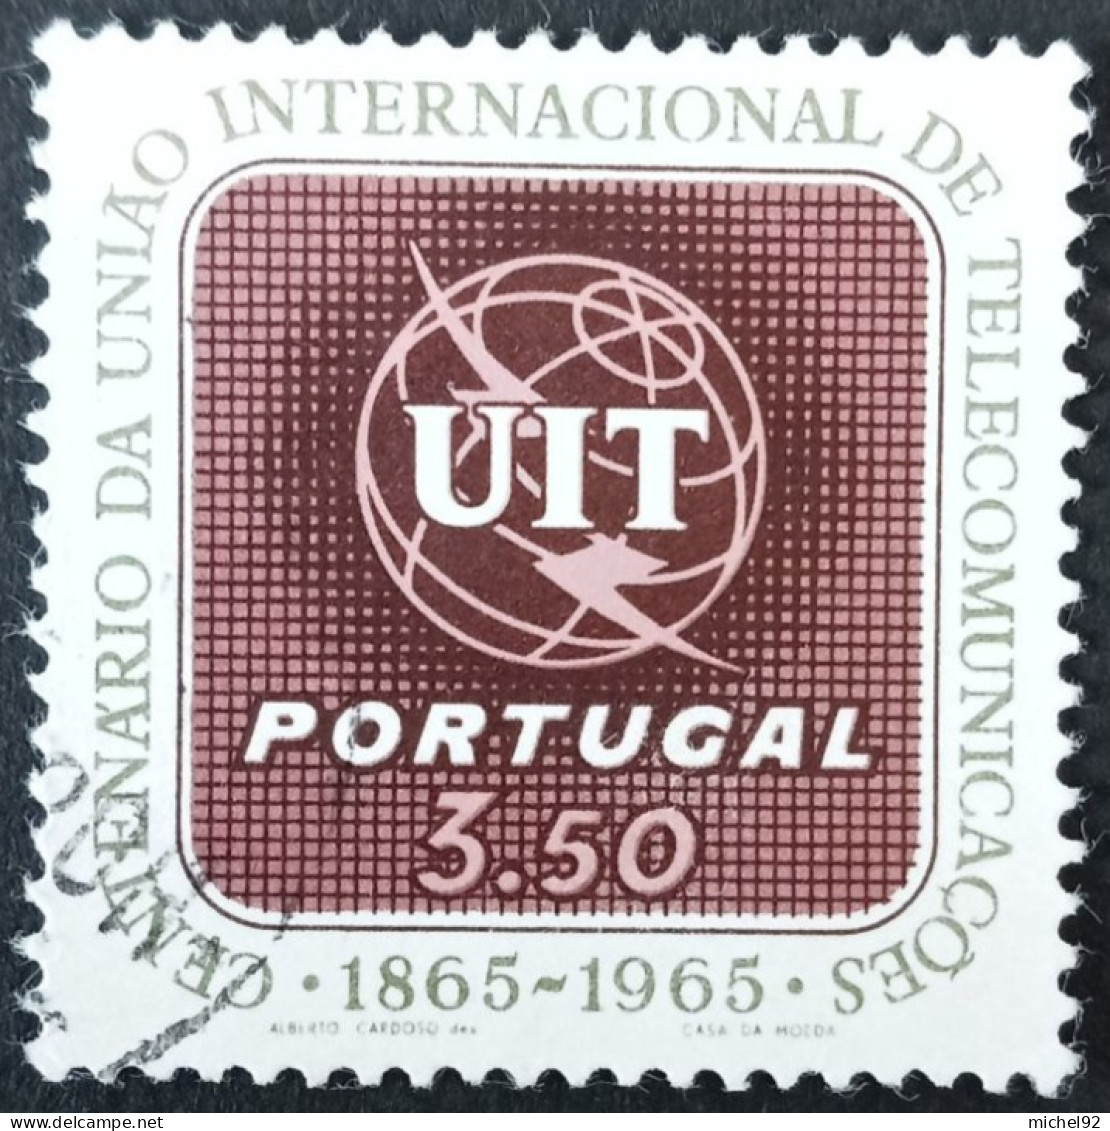 Portugal 1965 - YT N°964 - Oblitéré - Oblitérés